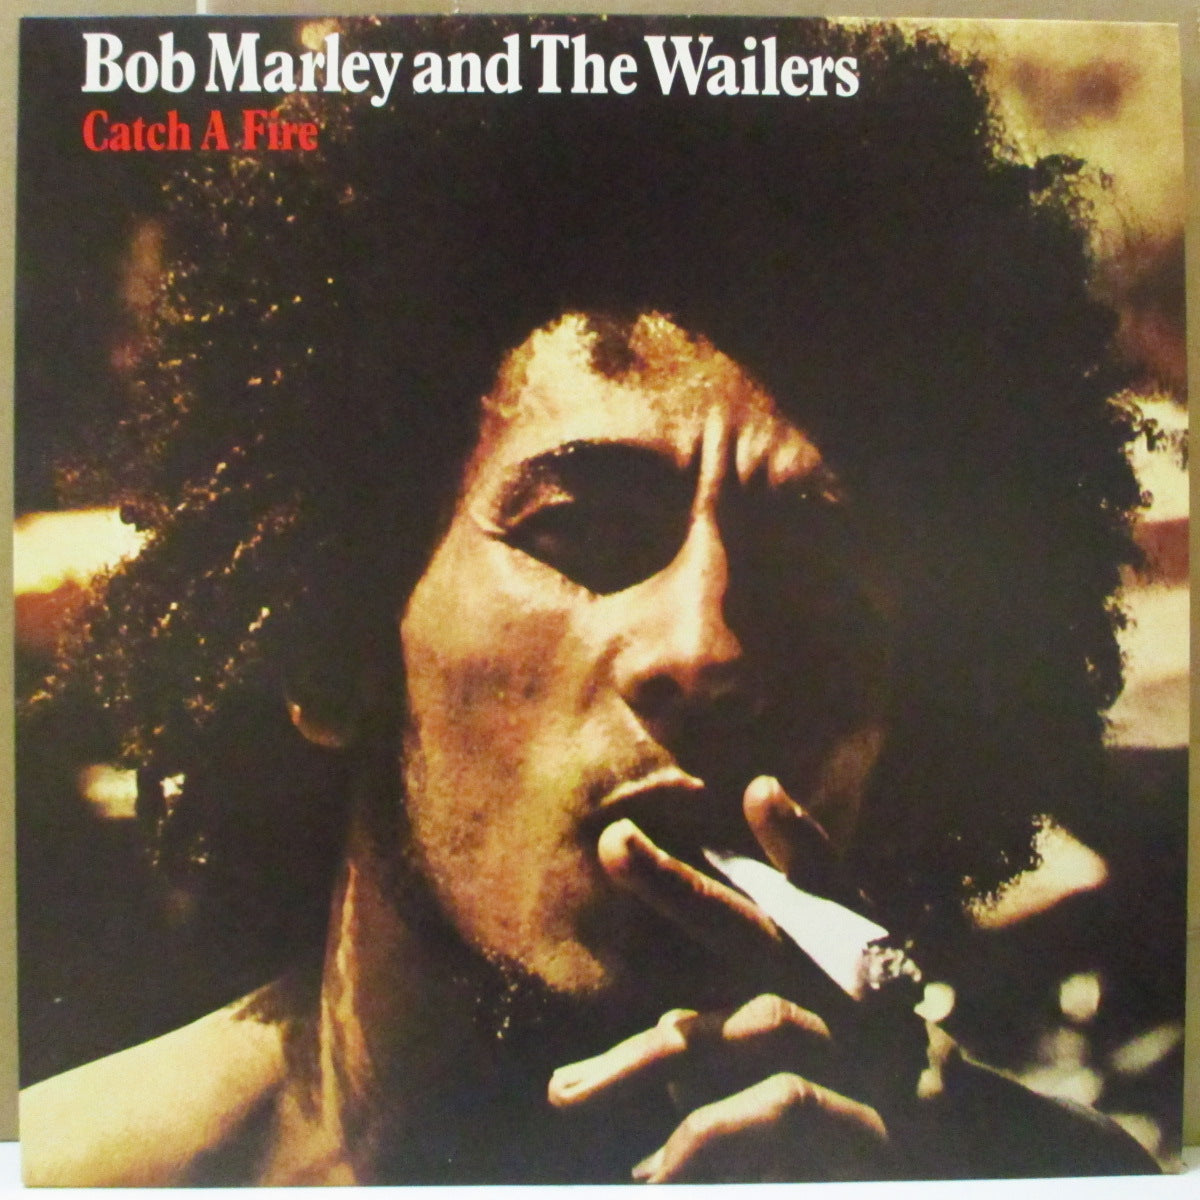 BOB MARLEY & THE WAILERS (ボブ・マーリー&ザ・ウェイラーズ) - Catch